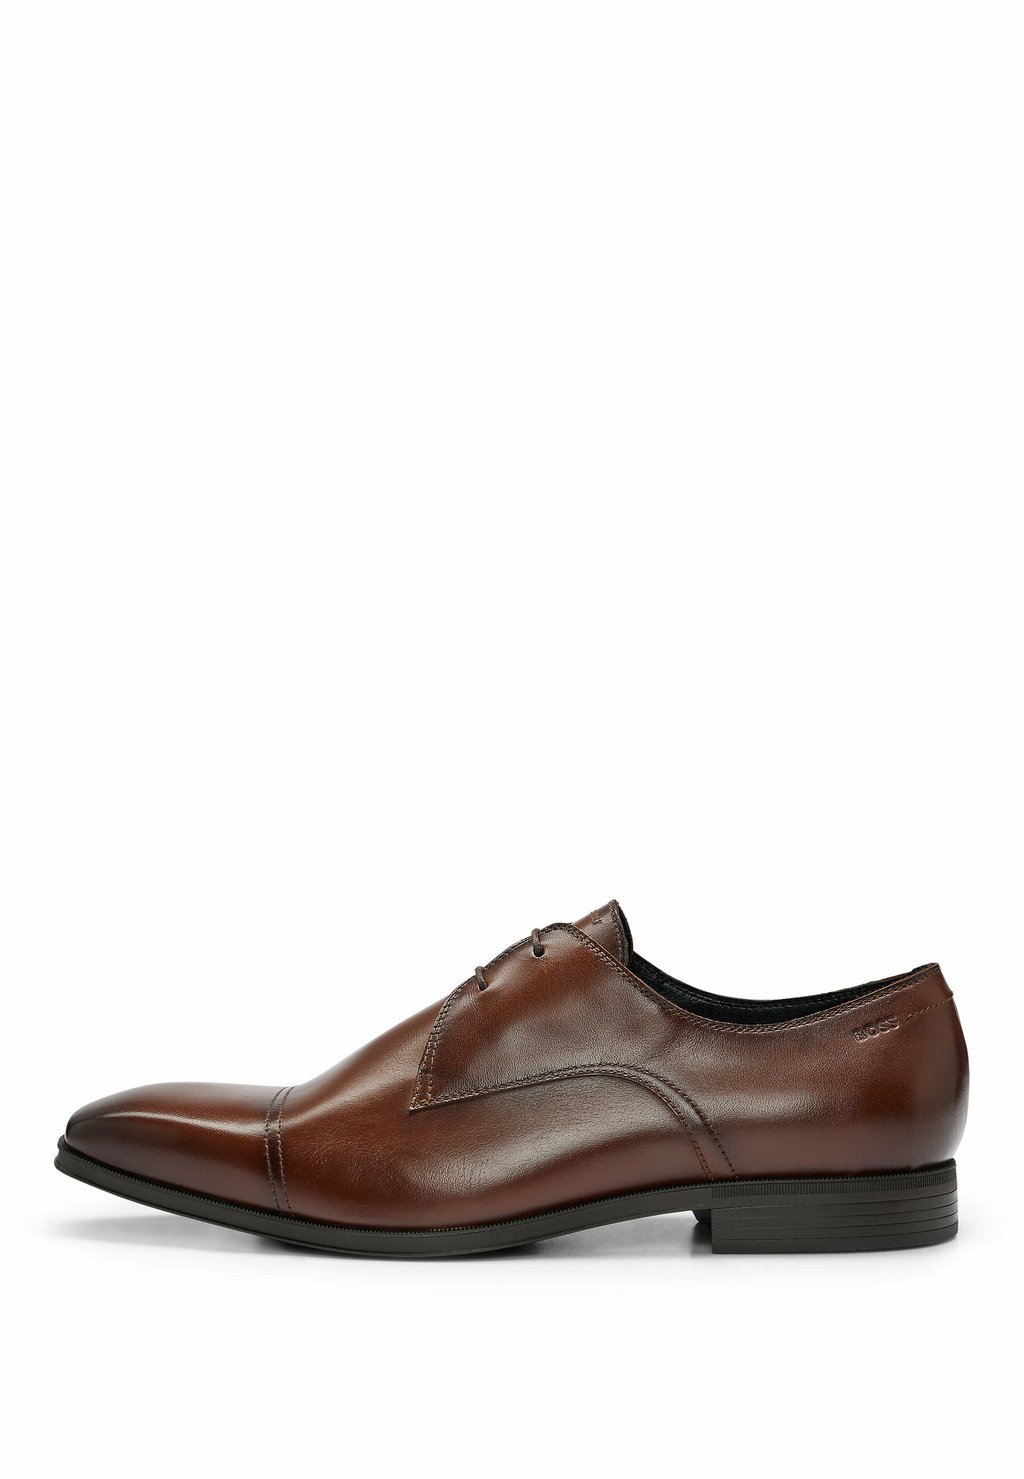 Элегантные туфли на шнуровке Theon Derb Buct BOSS, коричневый